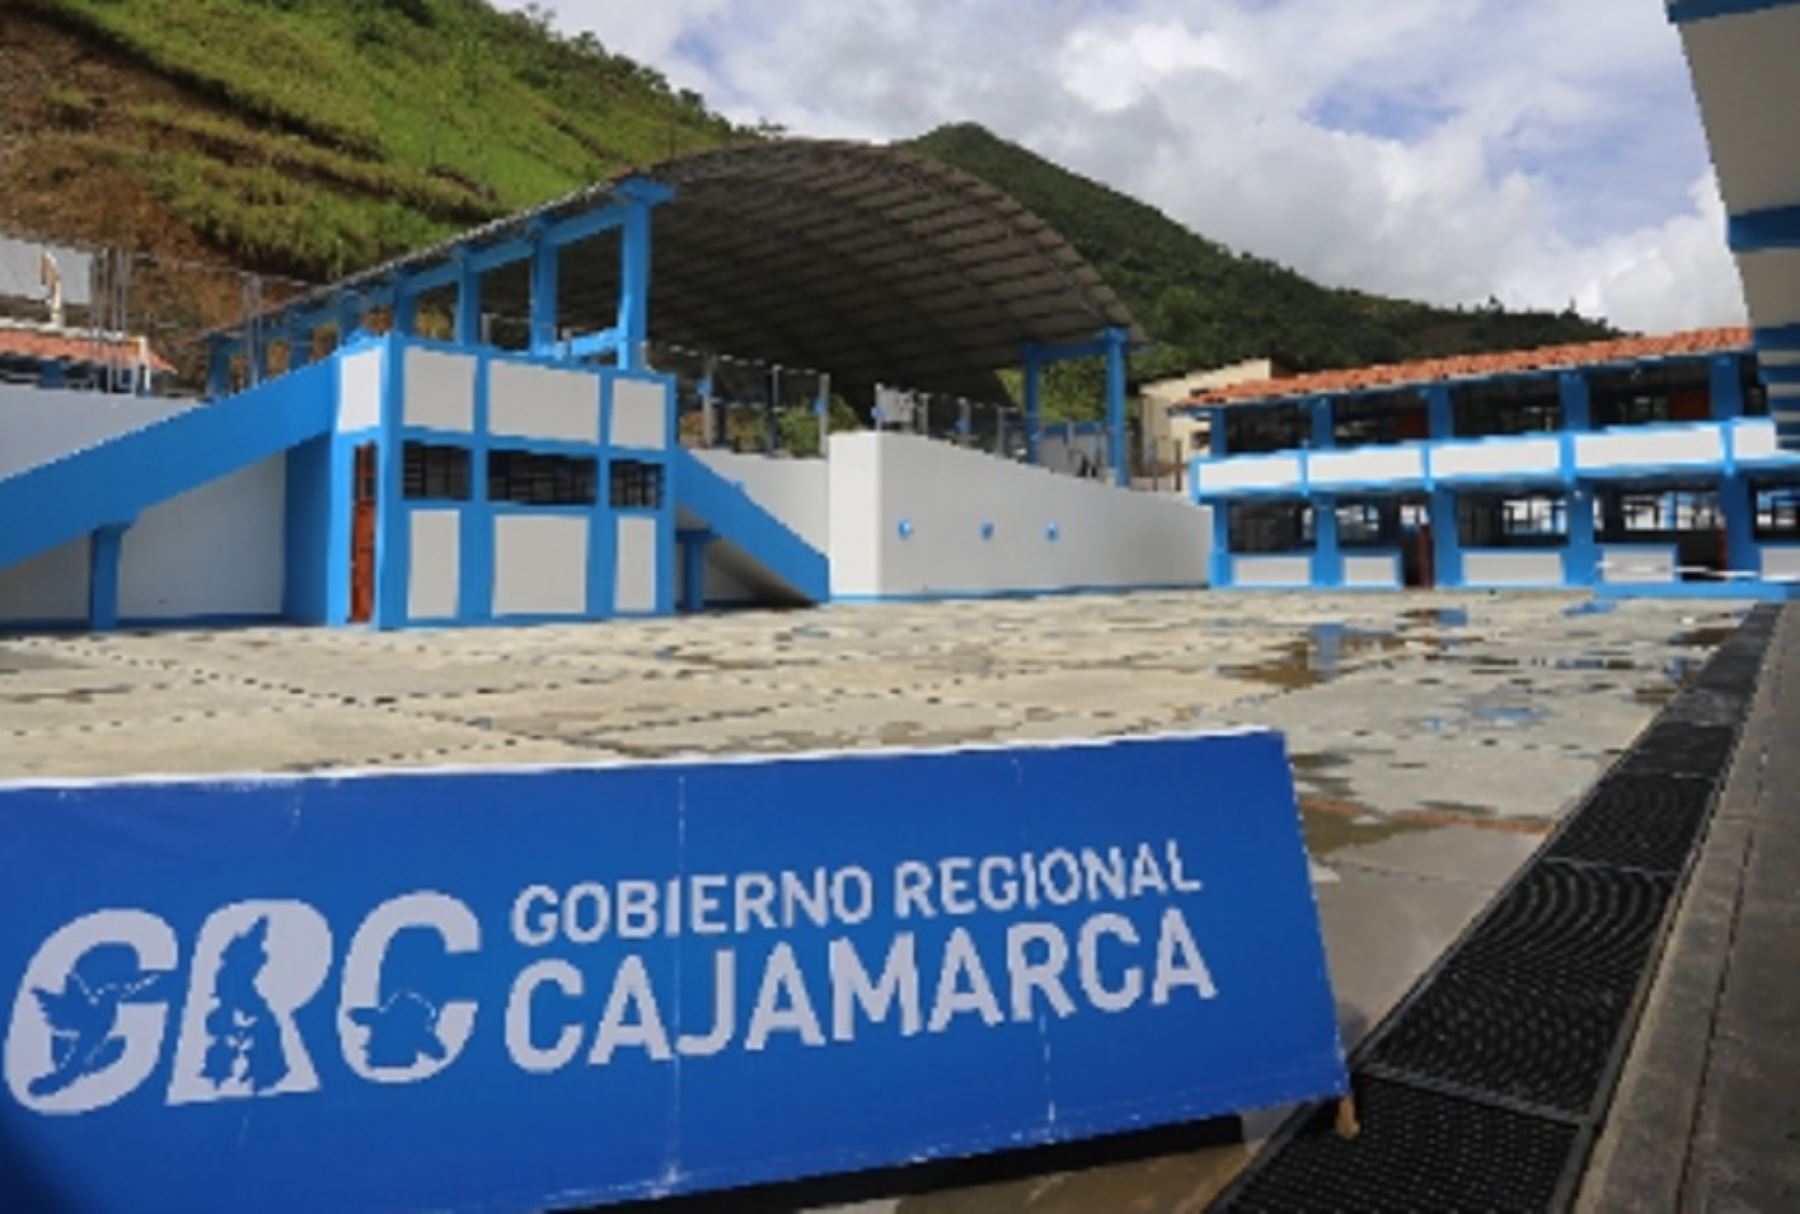 El Gobierno Regional de Cajamarca (GRC) gerencia una cartera de 81 proyectos en el rubro educativo con un presupuesto de 618 millones de soles, los cuales se ejecutan en las 13 provincias del departamento, en beneficio de estudiantes del nivel básico y superior no universitario.